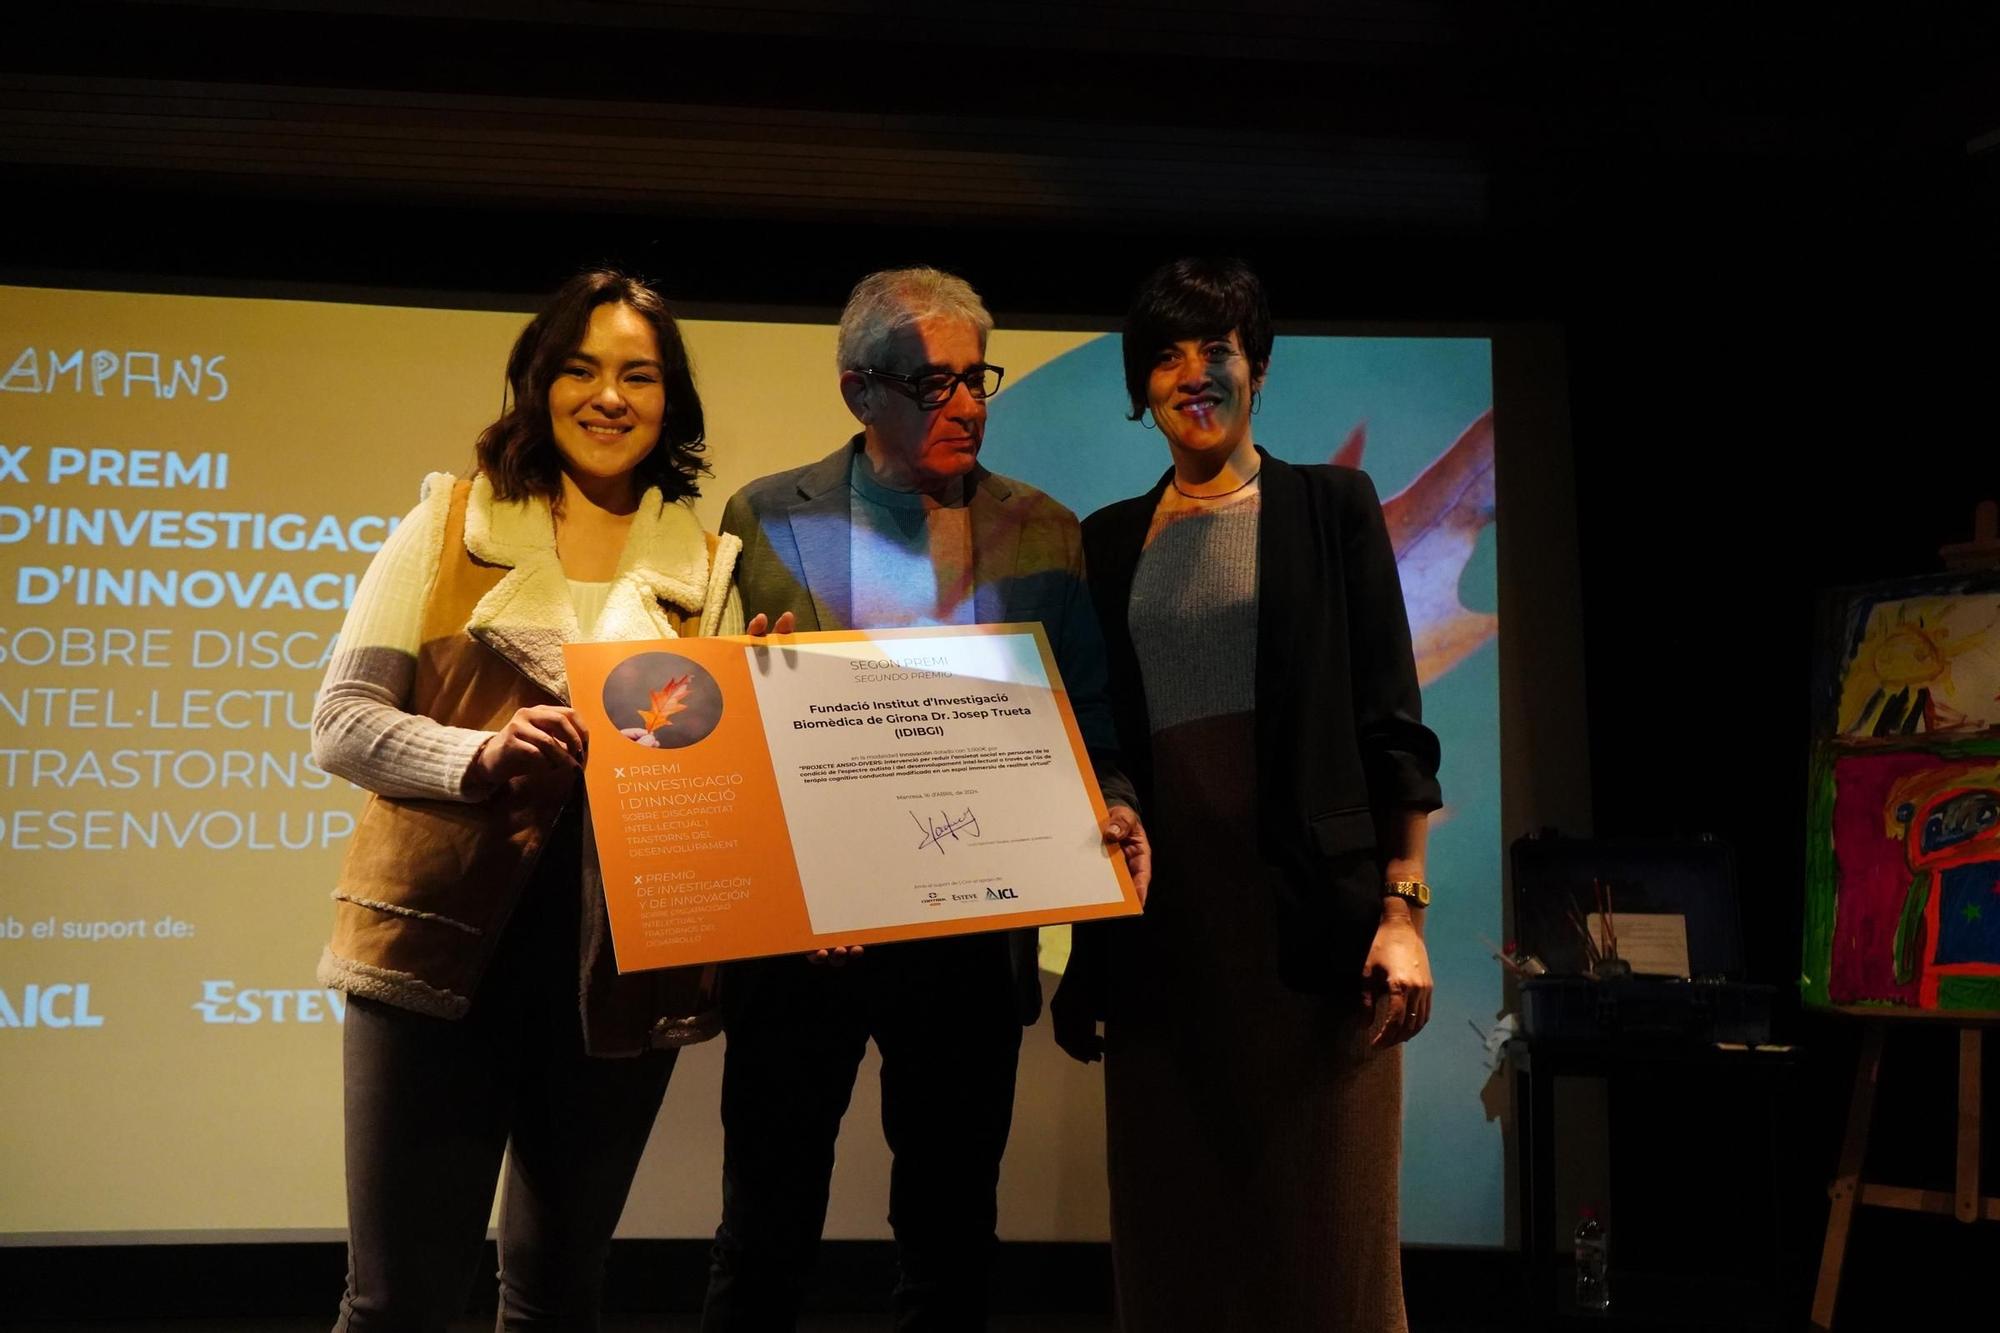 Les millors imatges de l'entrega de premis d’investigació i innovació d’Ampans a Manresa